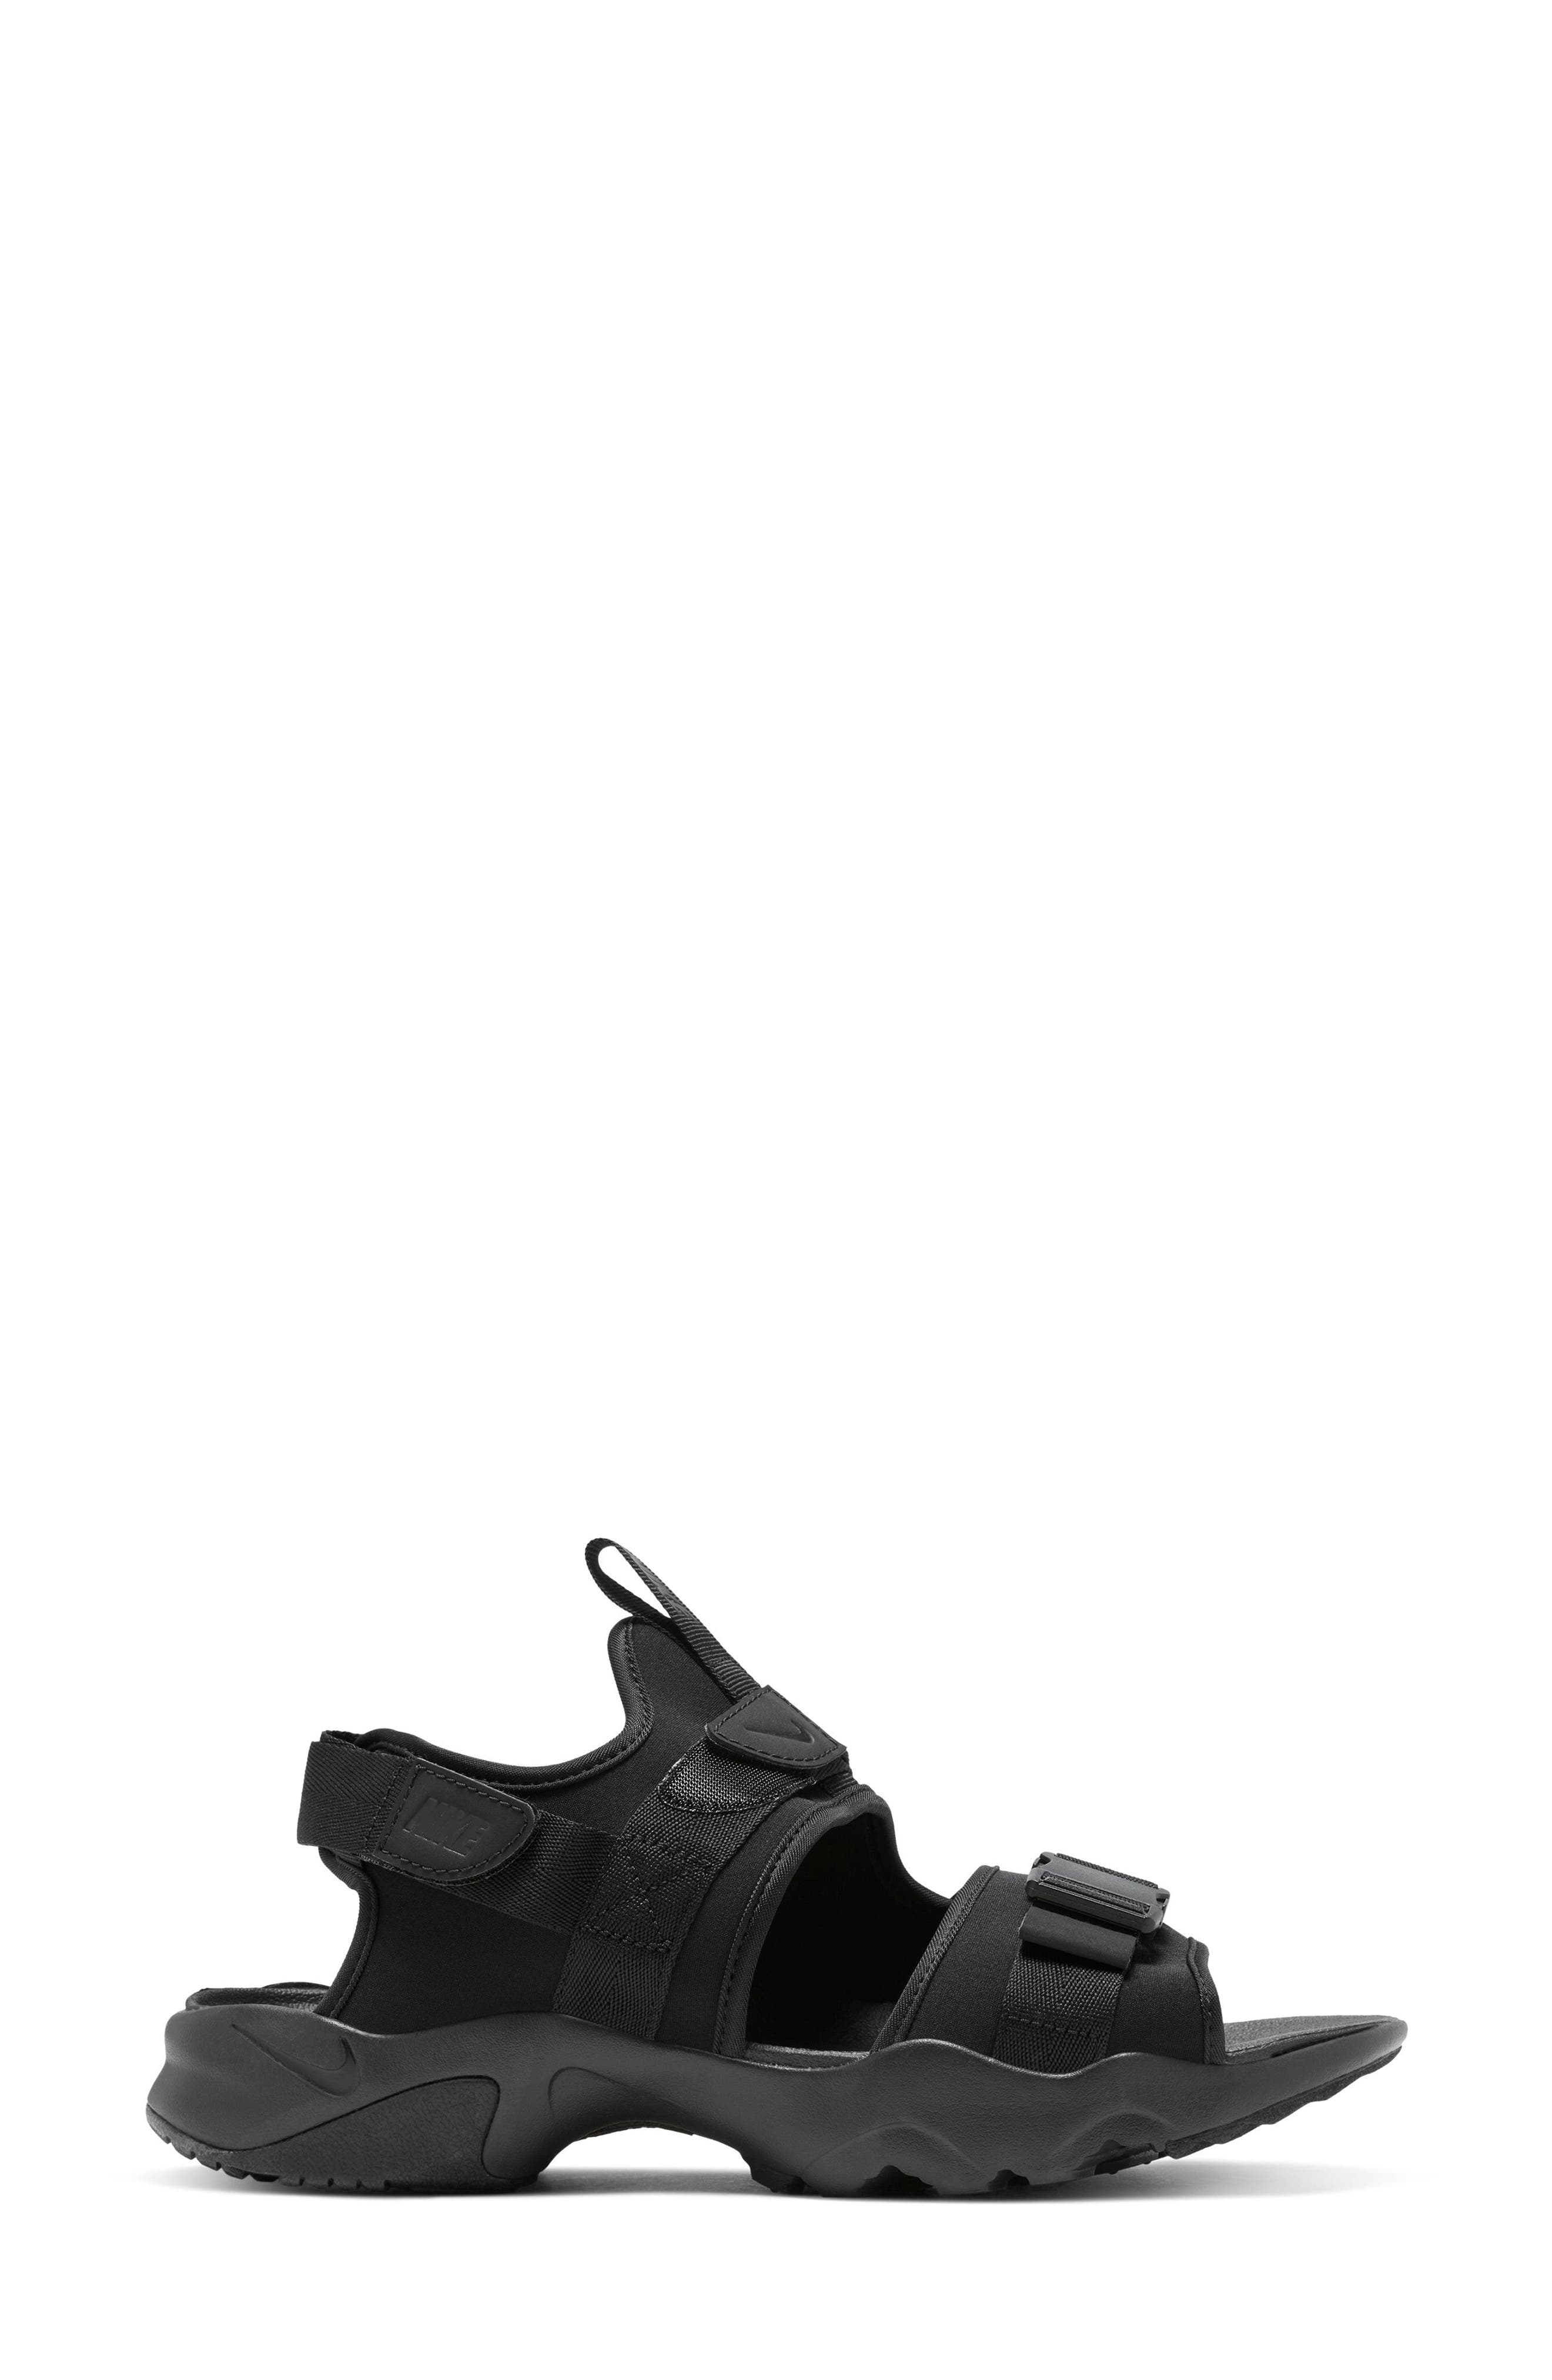 Men's Nike Sandals, Slides \u0026 Flip-Flops 